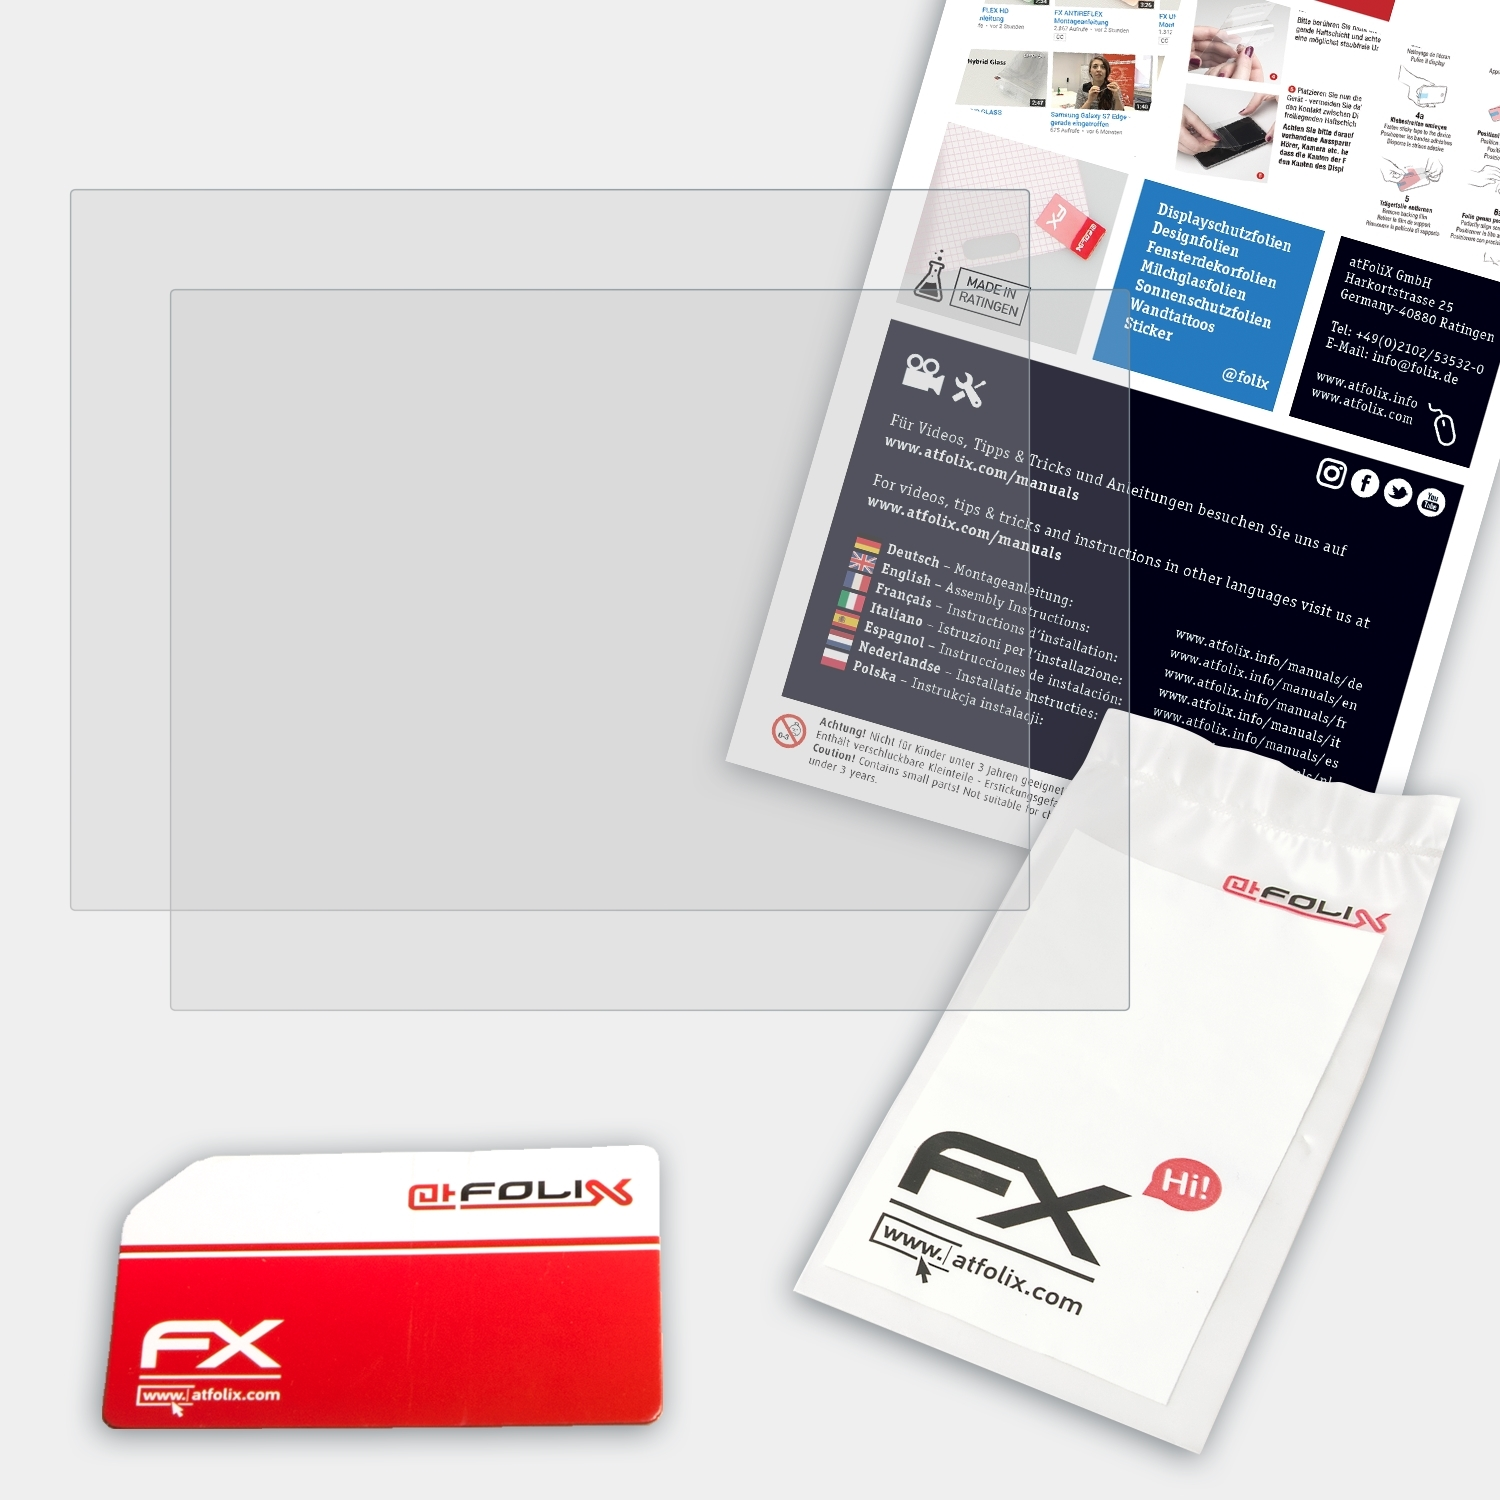 ATFOLIX 2x FX-Antireflex Displayschutz(für Panasonic CF-H2) ToughBook